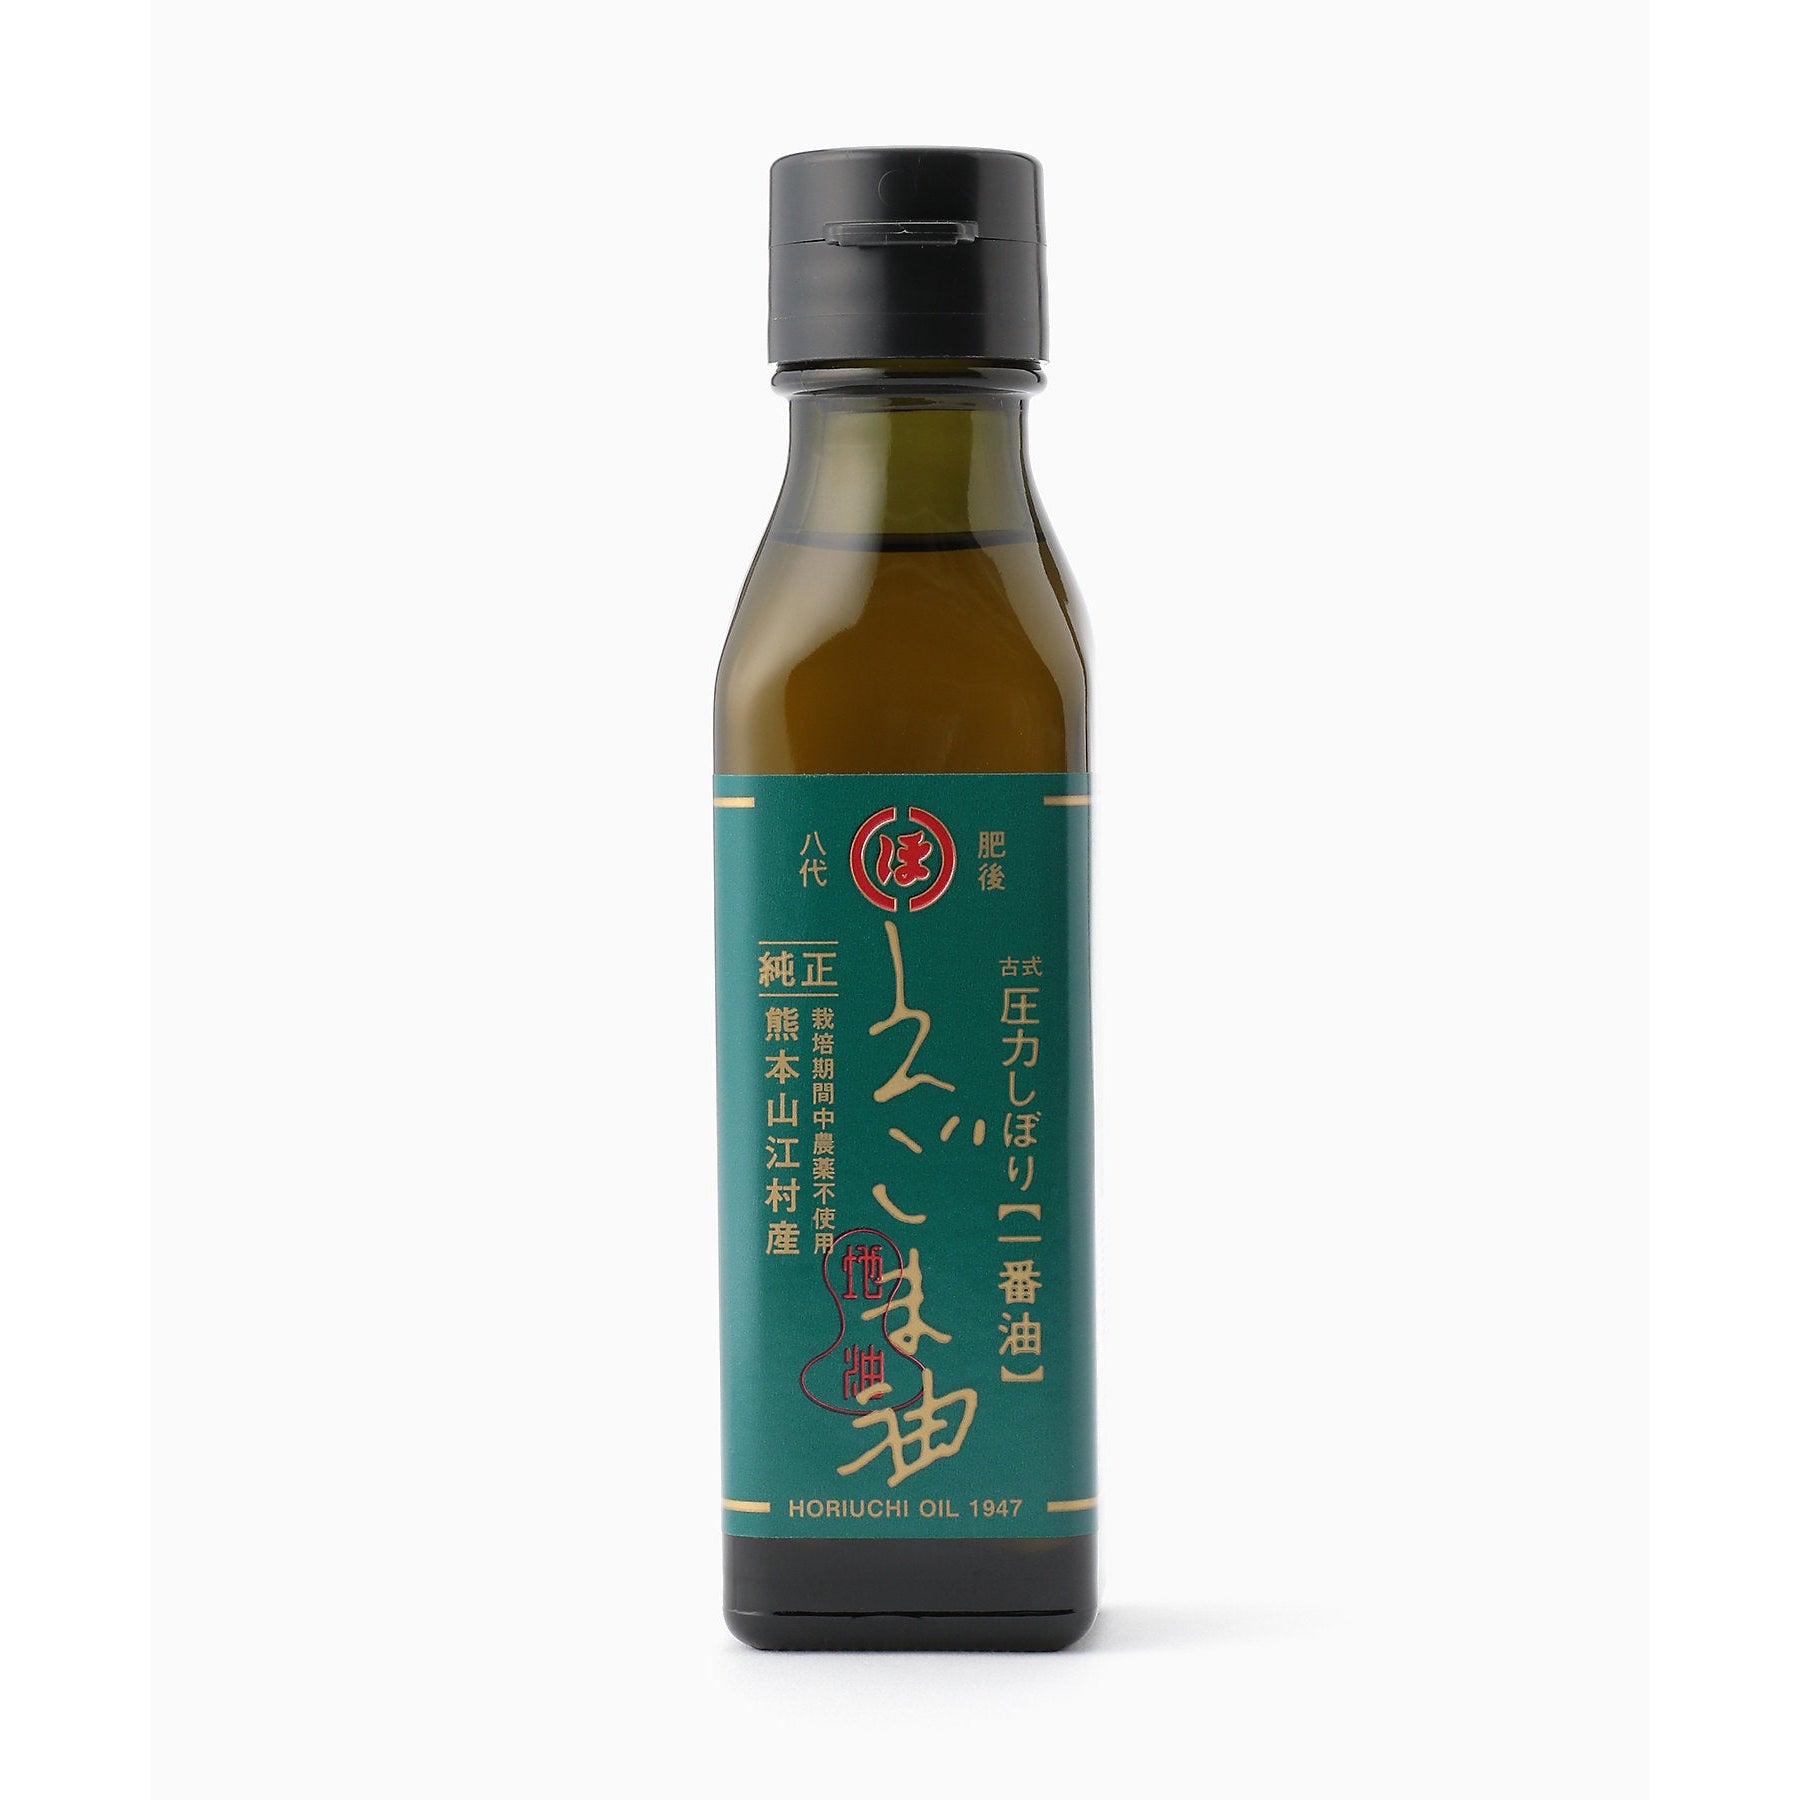 Horiuchi Egoma Oil Natural Japanese Perilla Seed Oil 105g, Japanese Taste